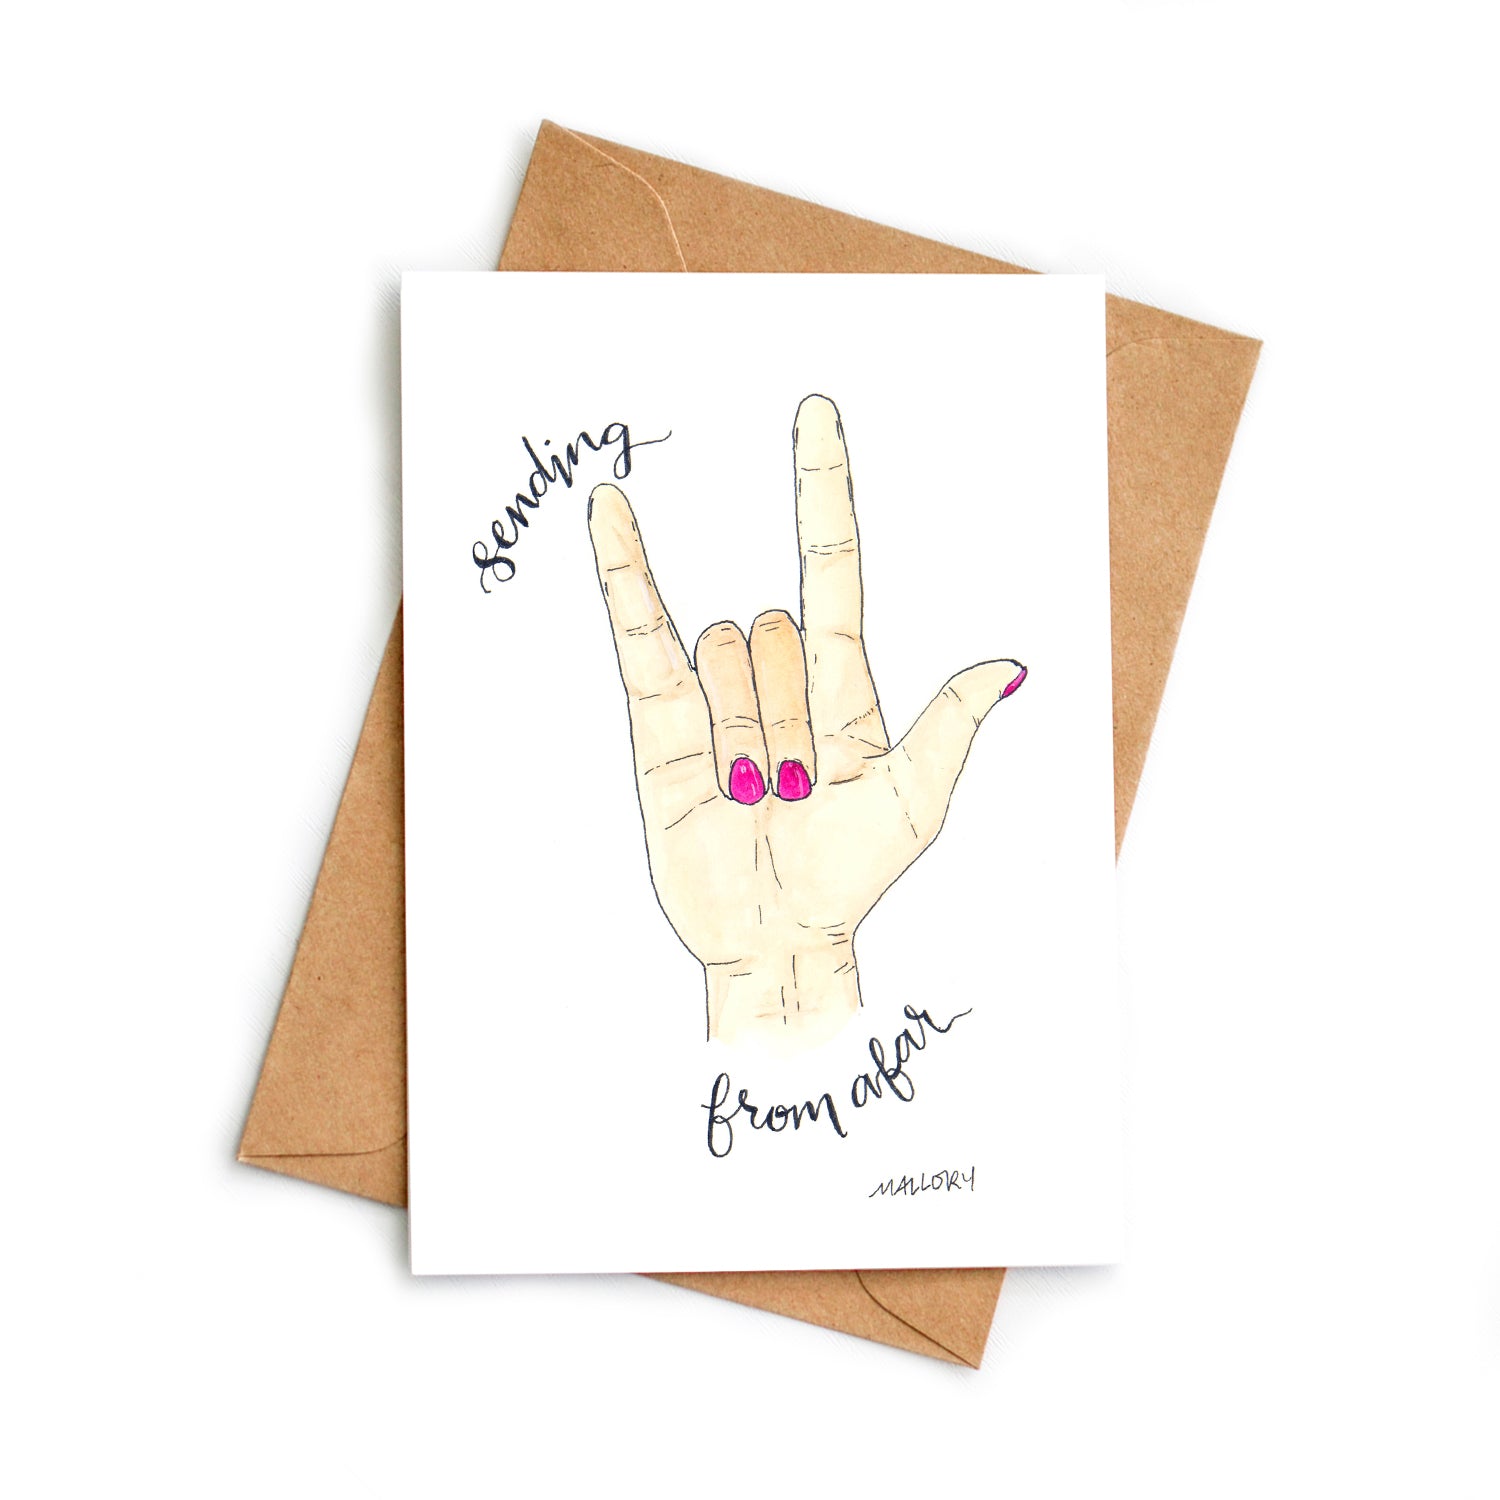 ASL Sending Love Anytime Card